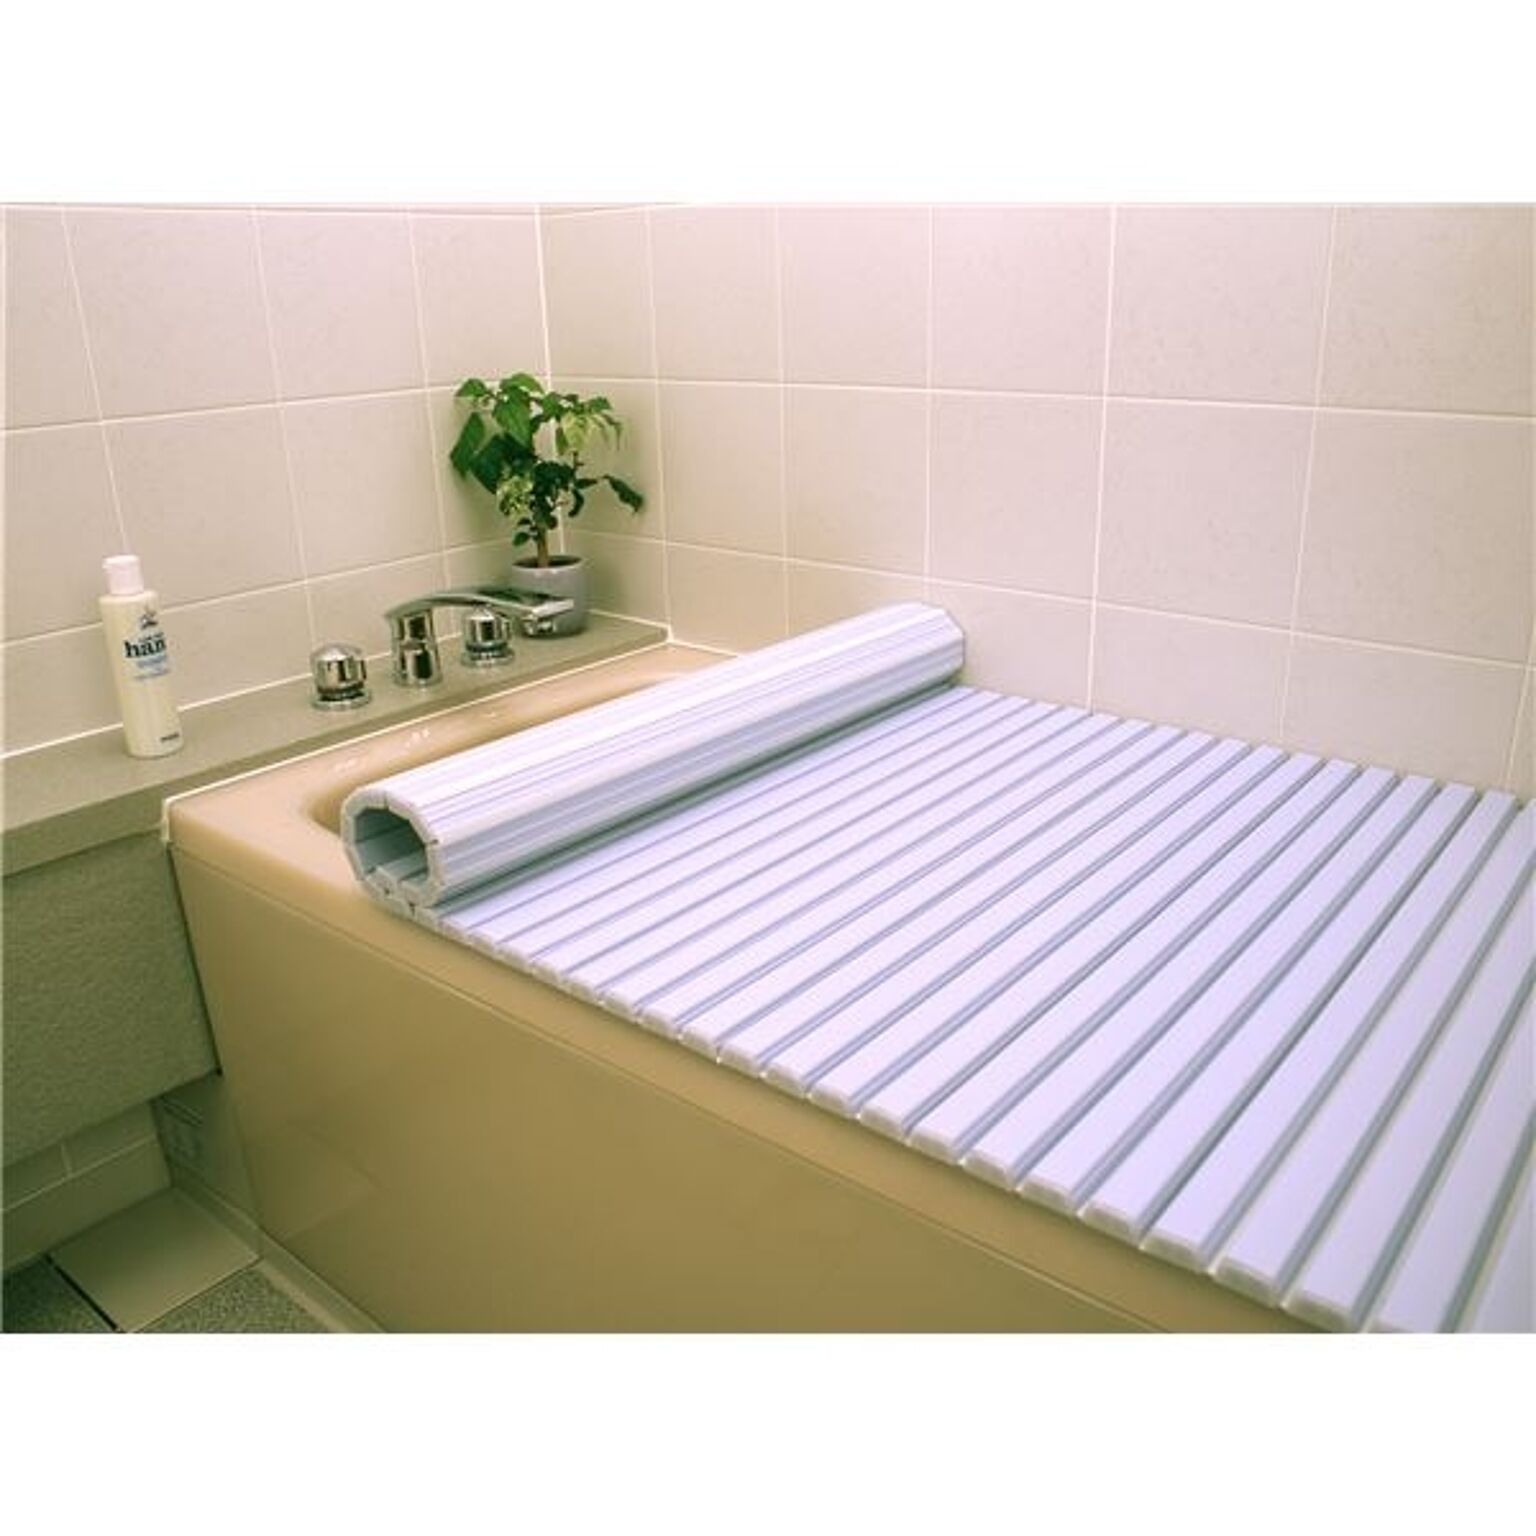 シャッター式風呂ふた/巻きフタ 75cm×150cm用 ブルー SGマーク認定 日本製